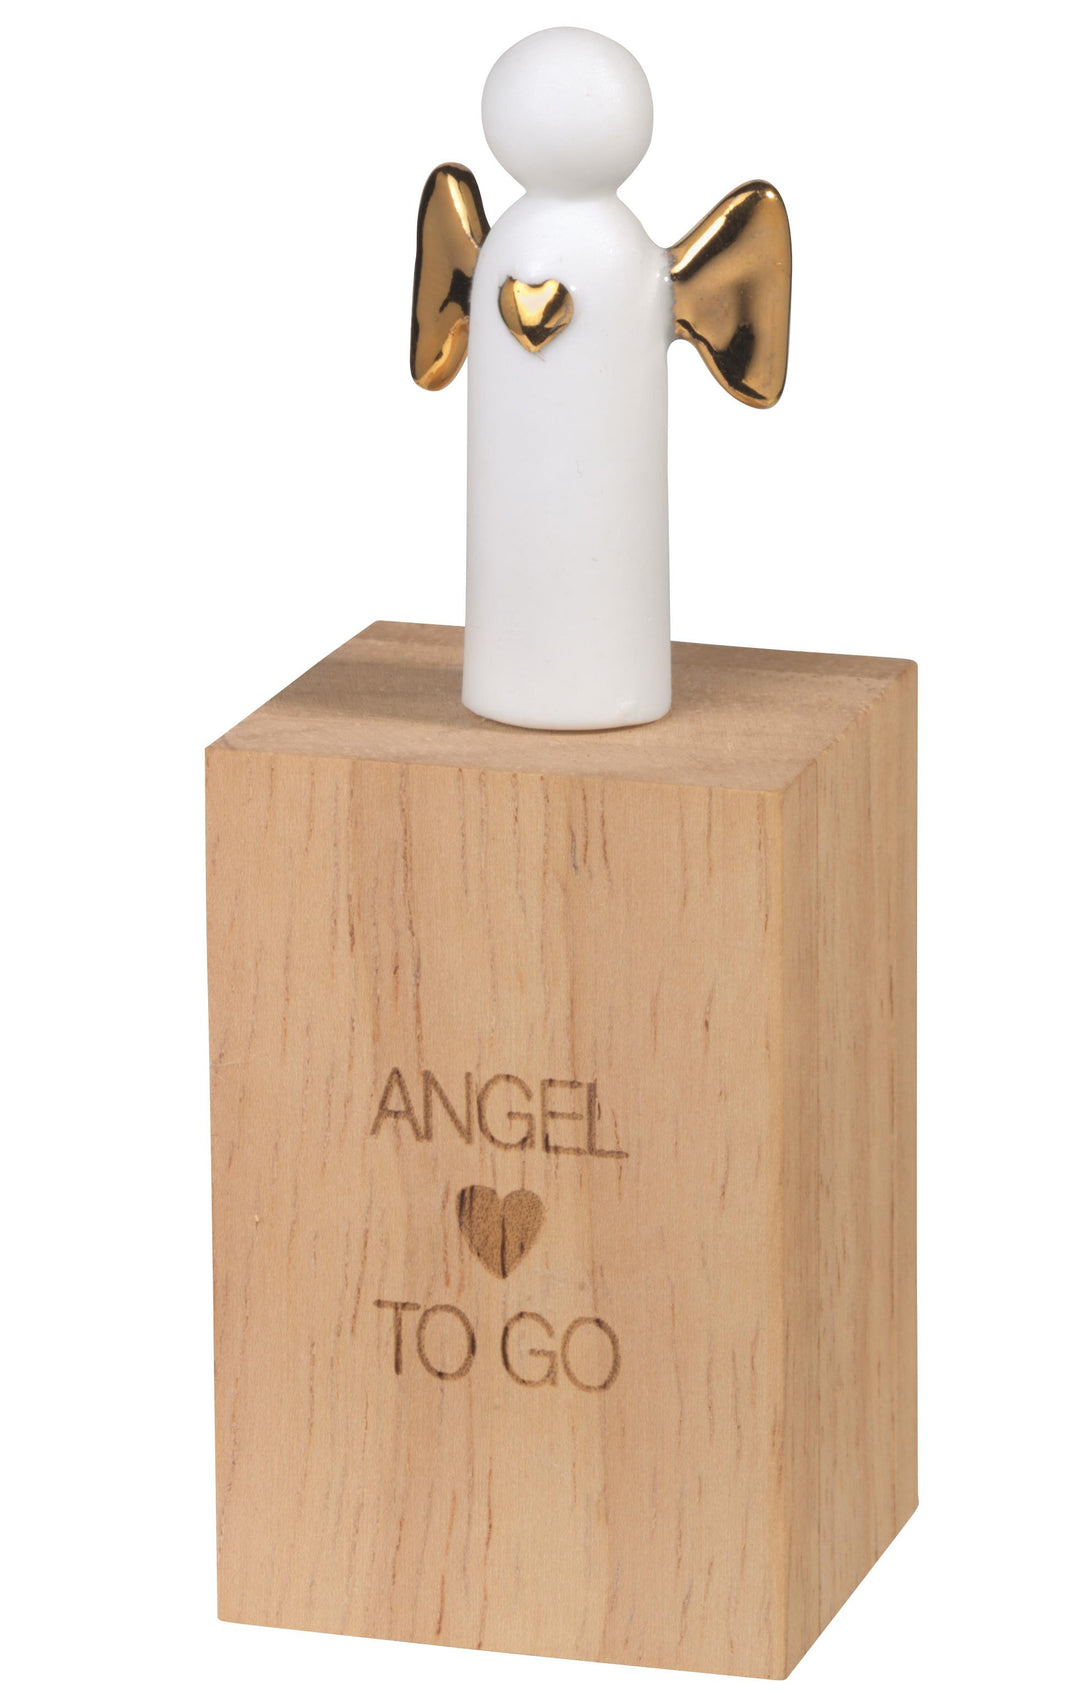 Kleiner Engel "Angel to go"